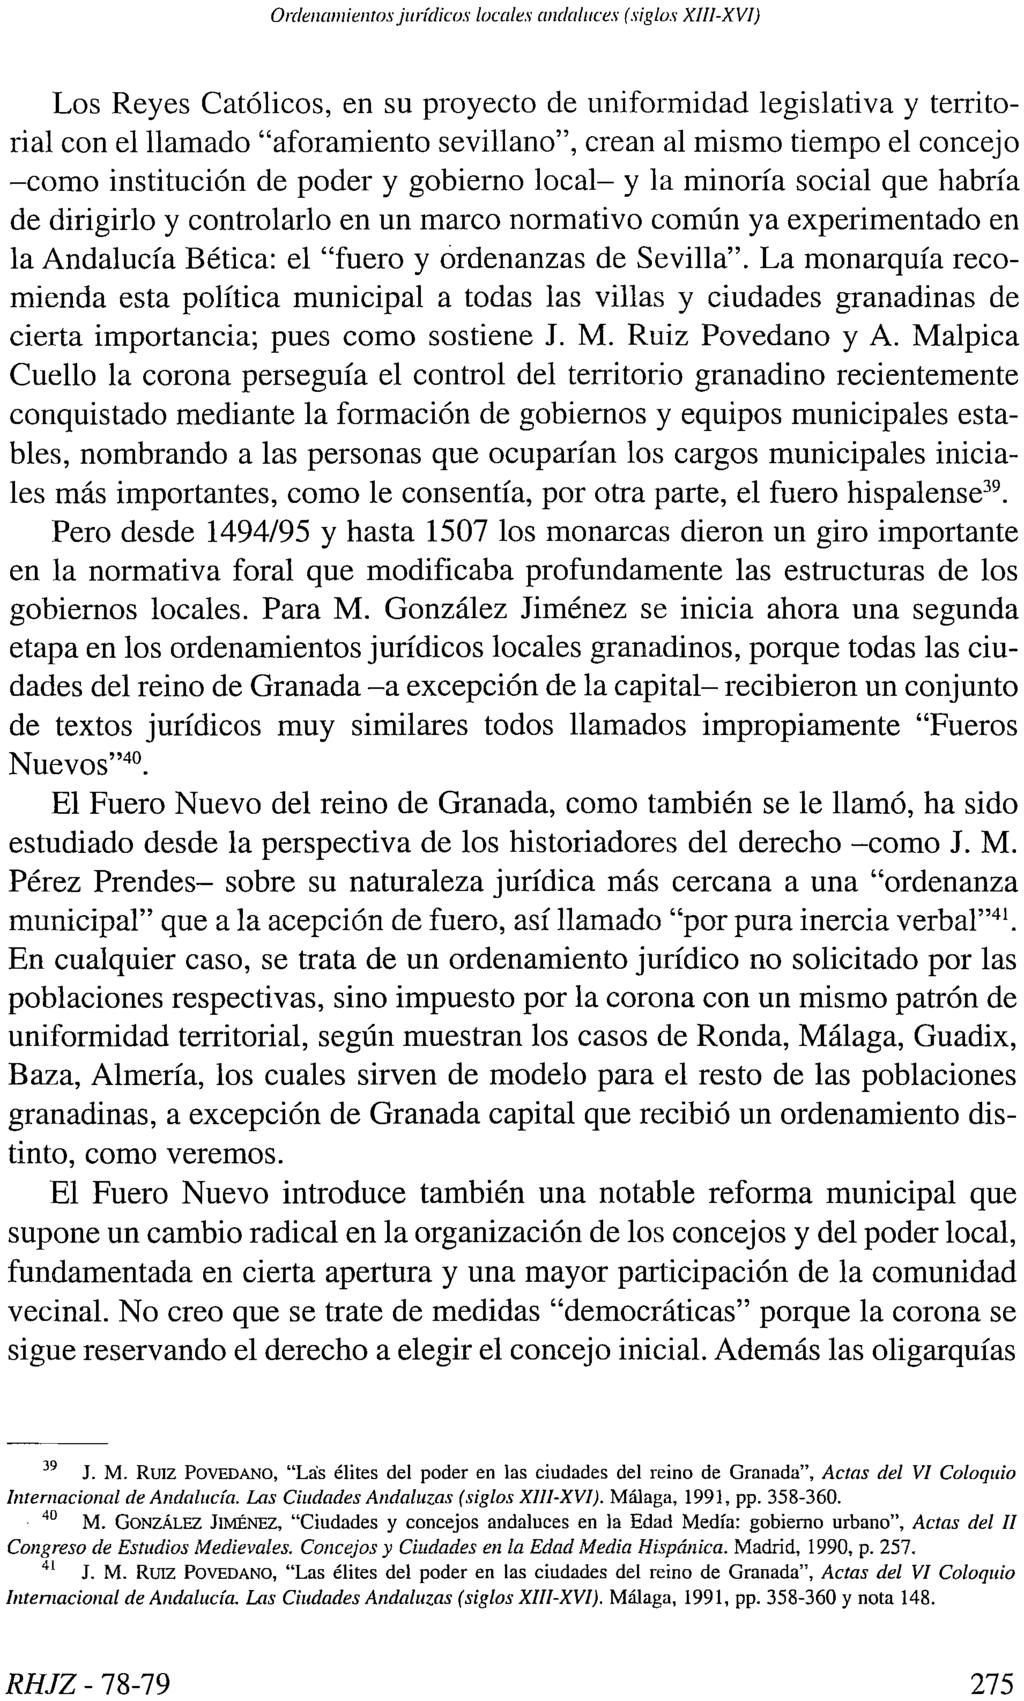 Ordenamientos jurídicos locales andaluces (siglos XIII-XVI) Los Reyes Católicos, en su proyecto de uniformidad legislativa y territorial con el llamado "aforamiento sevillano", crean al mismo tiempo